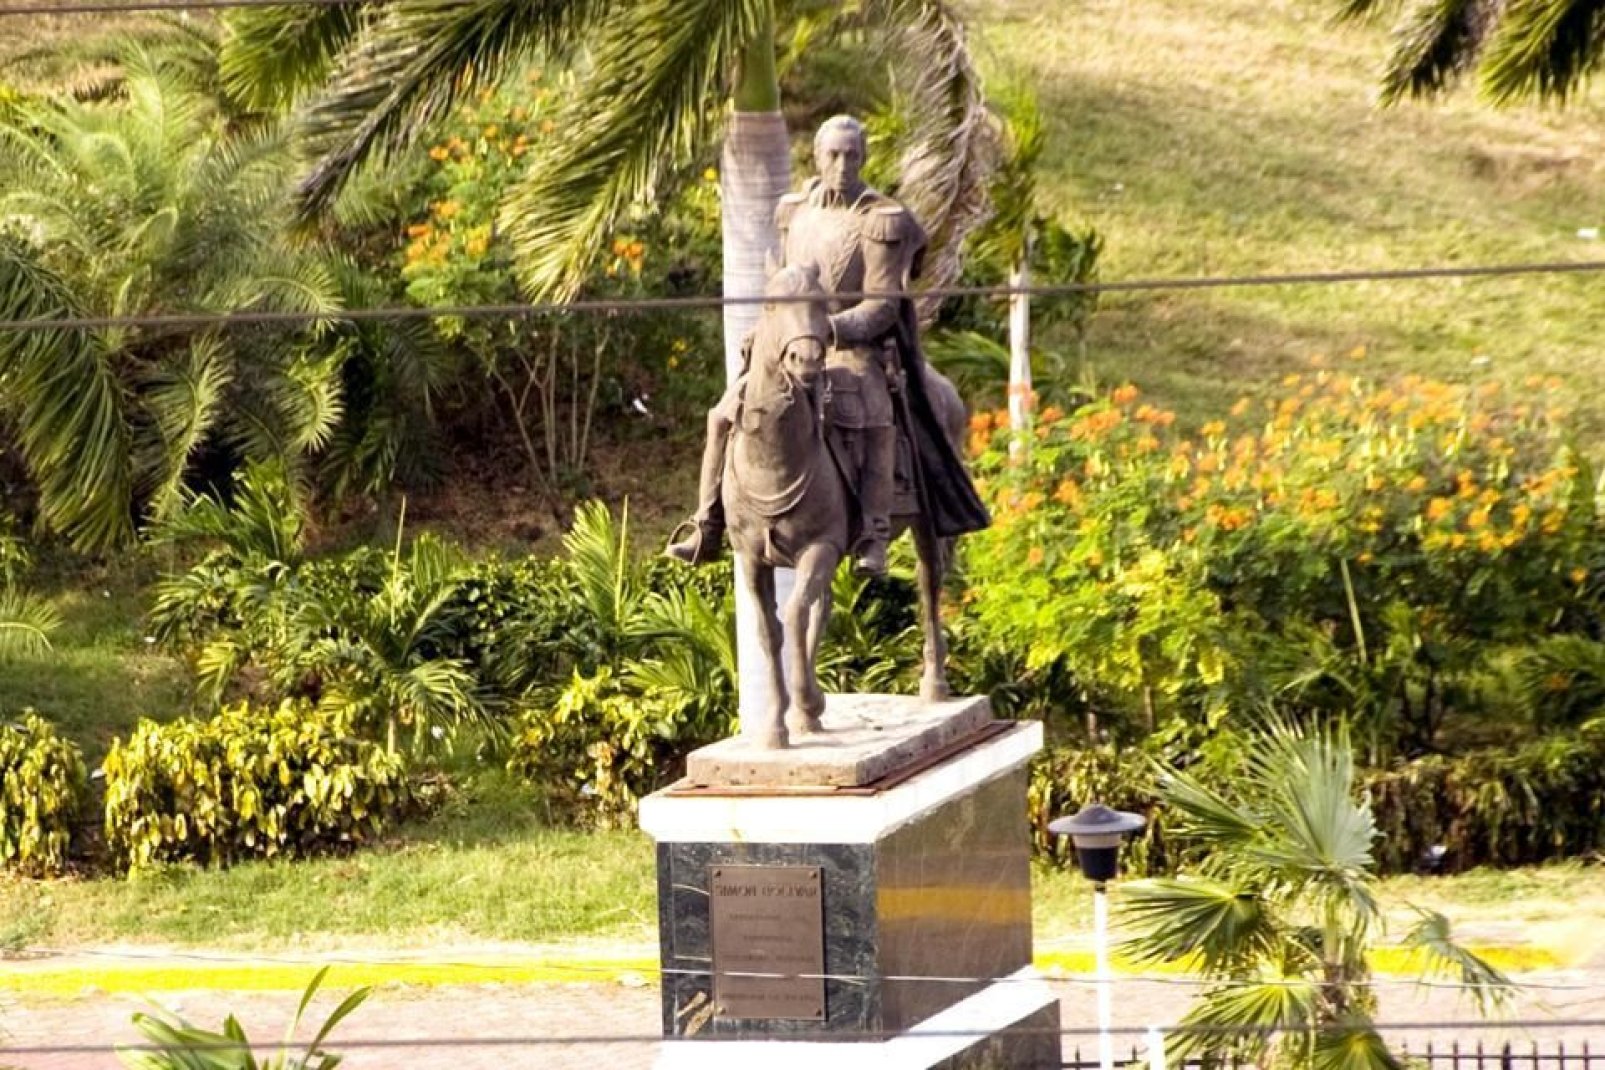 Diese Statue auf dem Plaza de la Revolucion wurde zu Ehren jenes Mannes errichtet, der sein Leben für die Unabhängigkeit der spanischen Kolonien geopfert hatte.